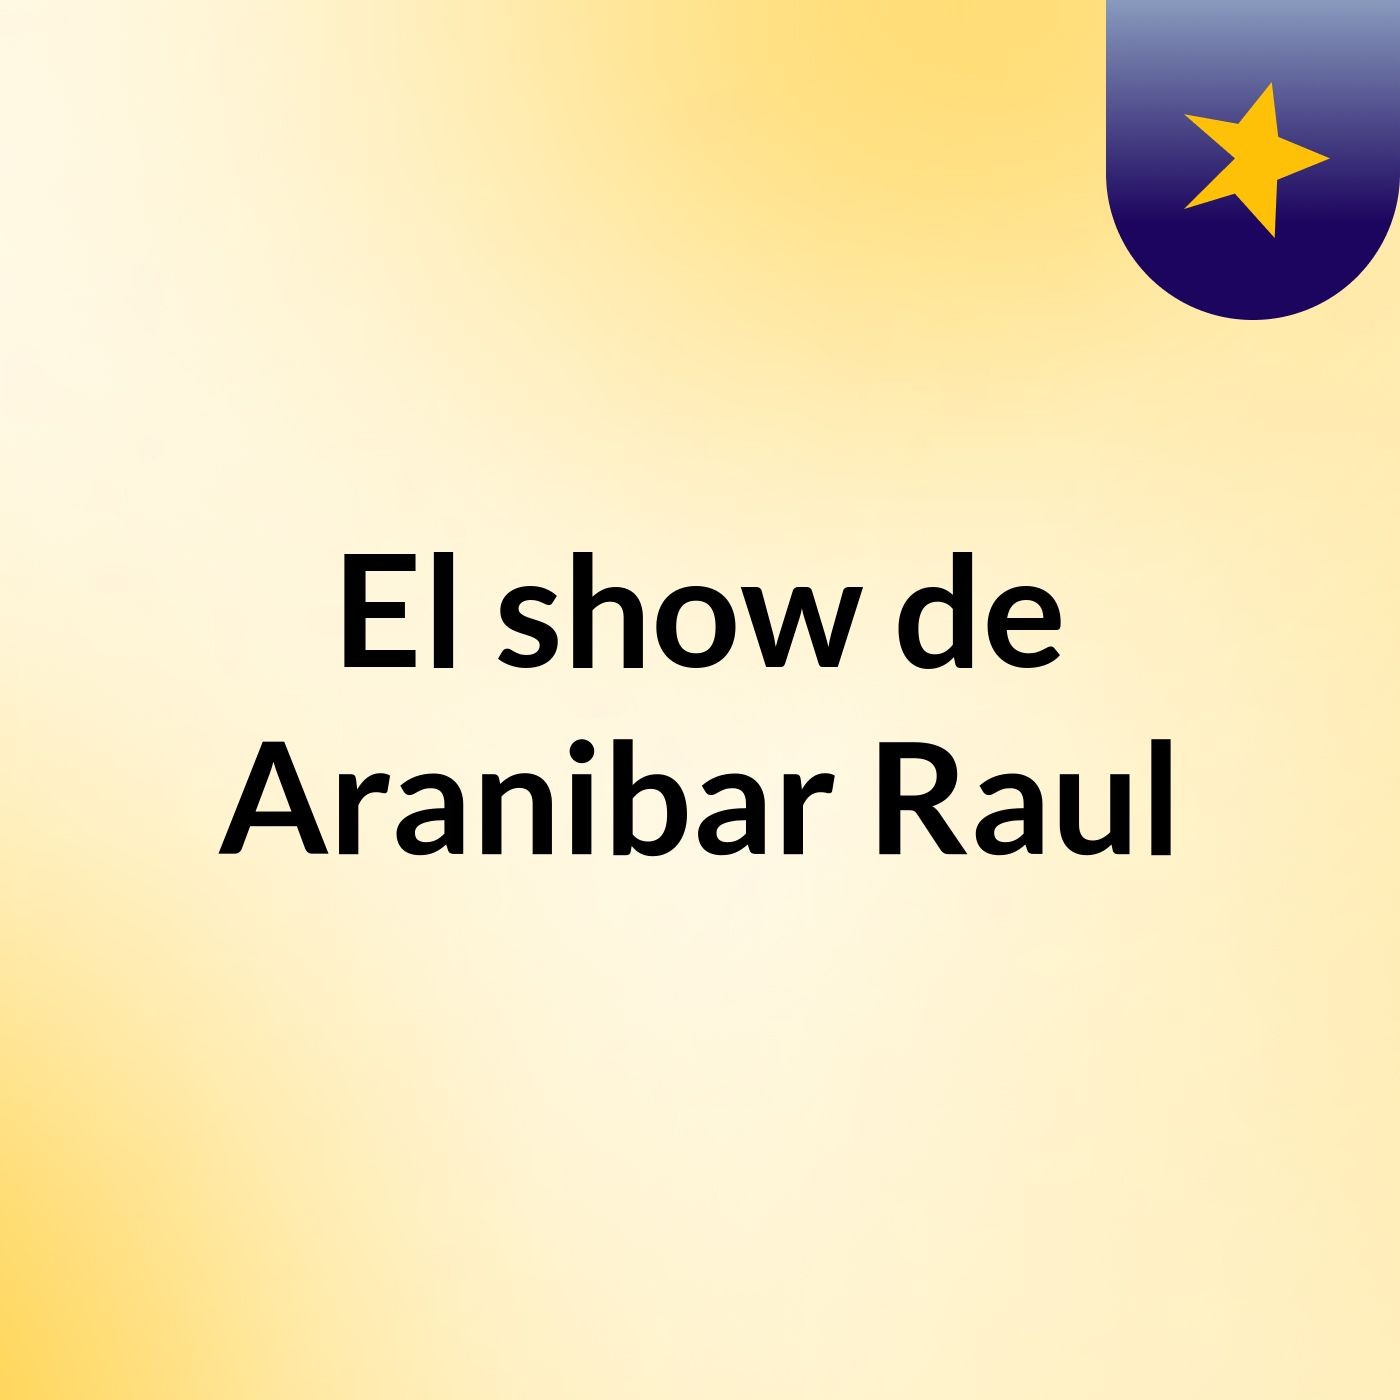 El show de Aranibar Raul